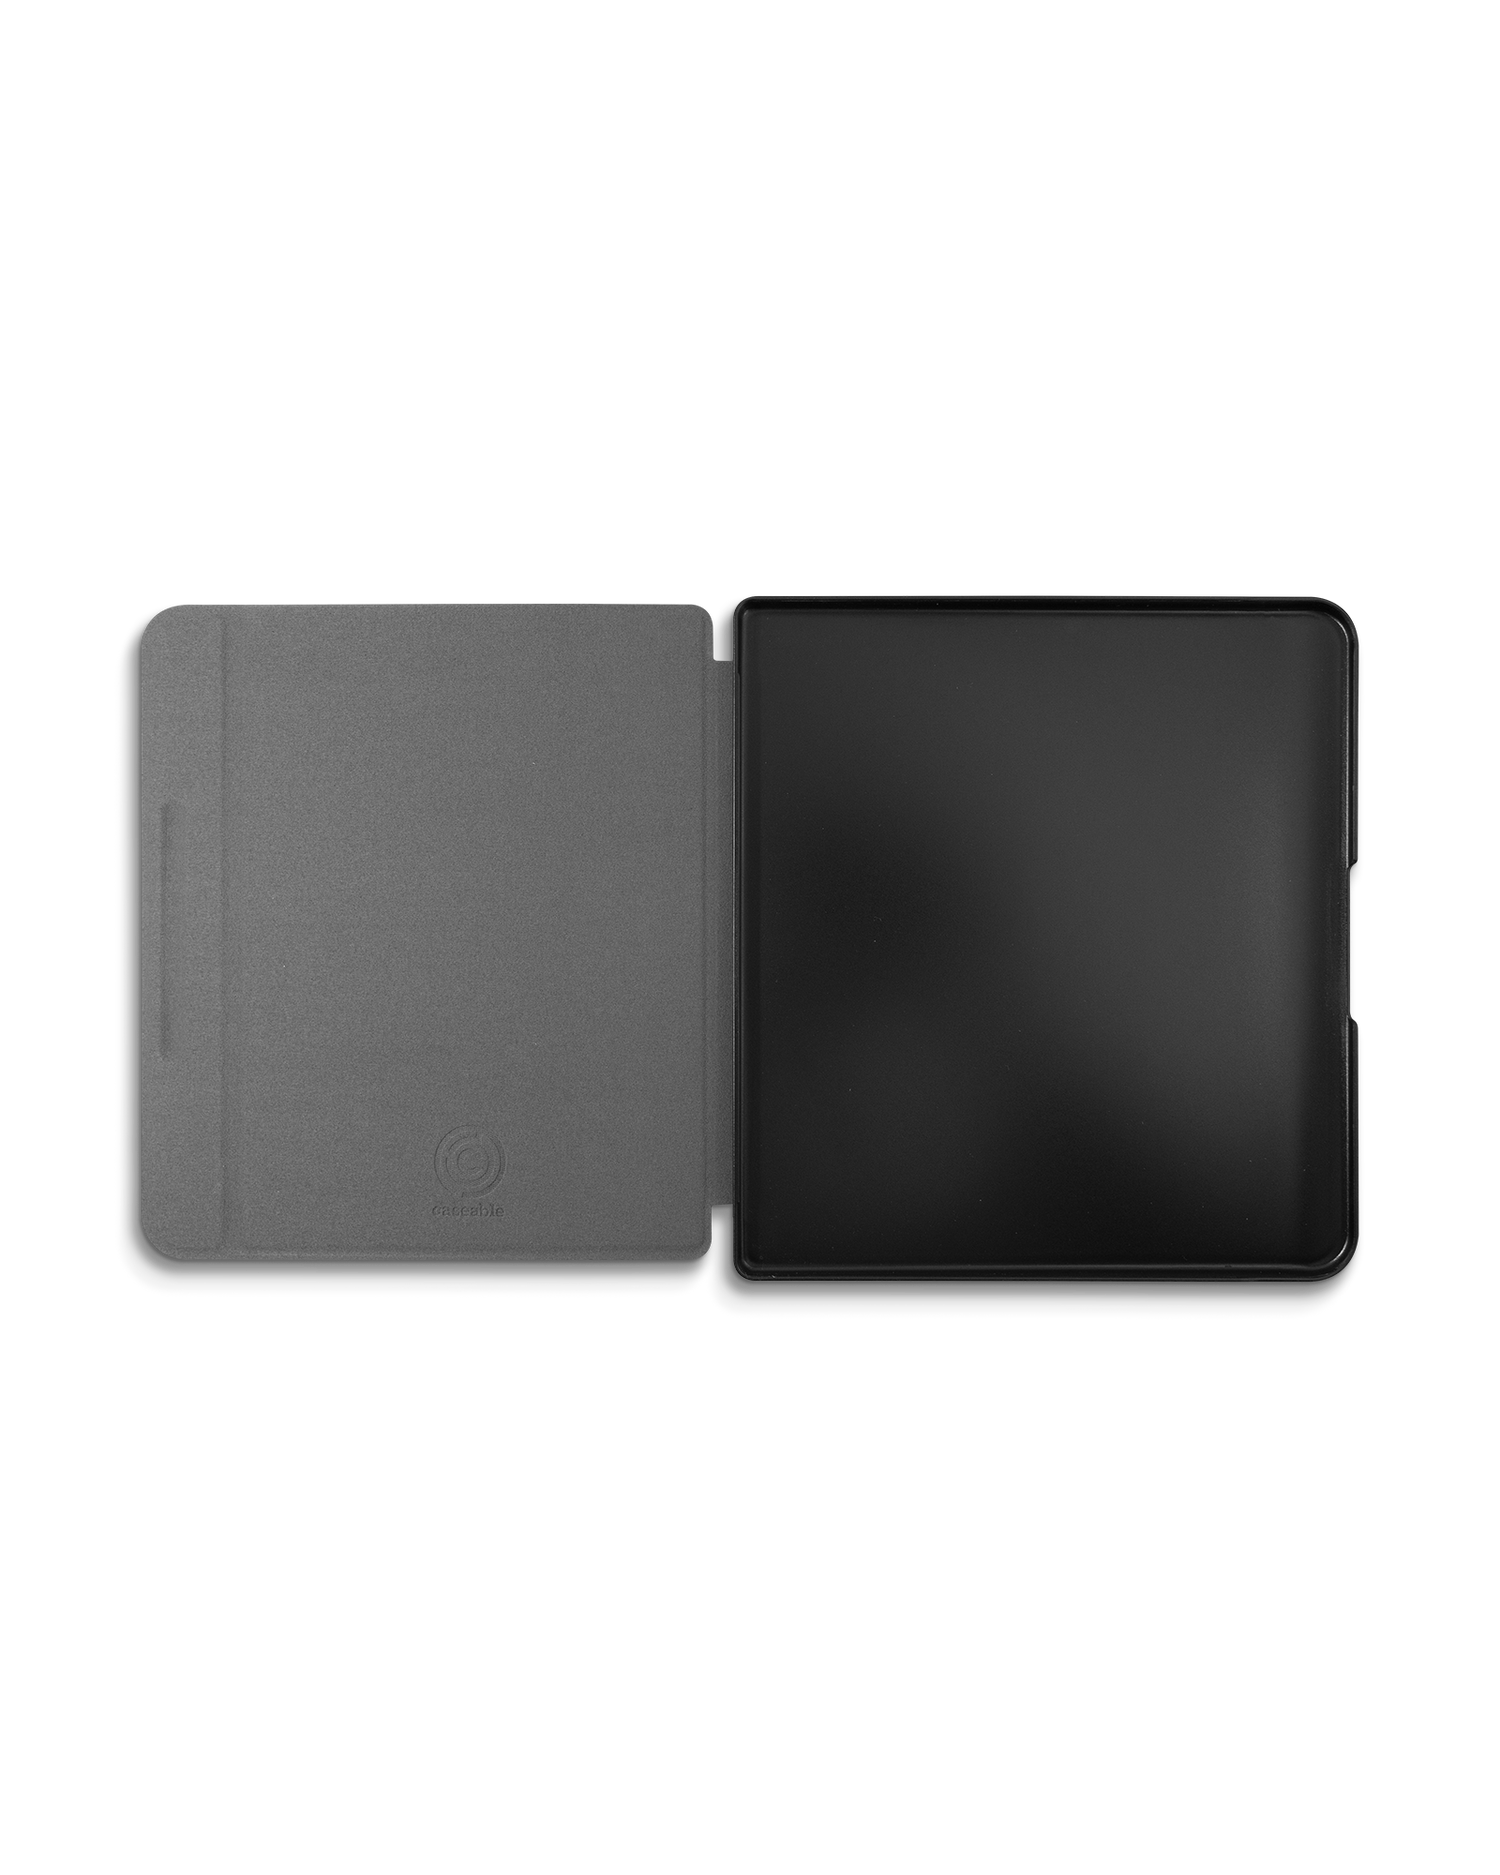 Spec Ops Dark eBook Reader Smart Case für tolino epos 2: Geöffnet Innenansicht